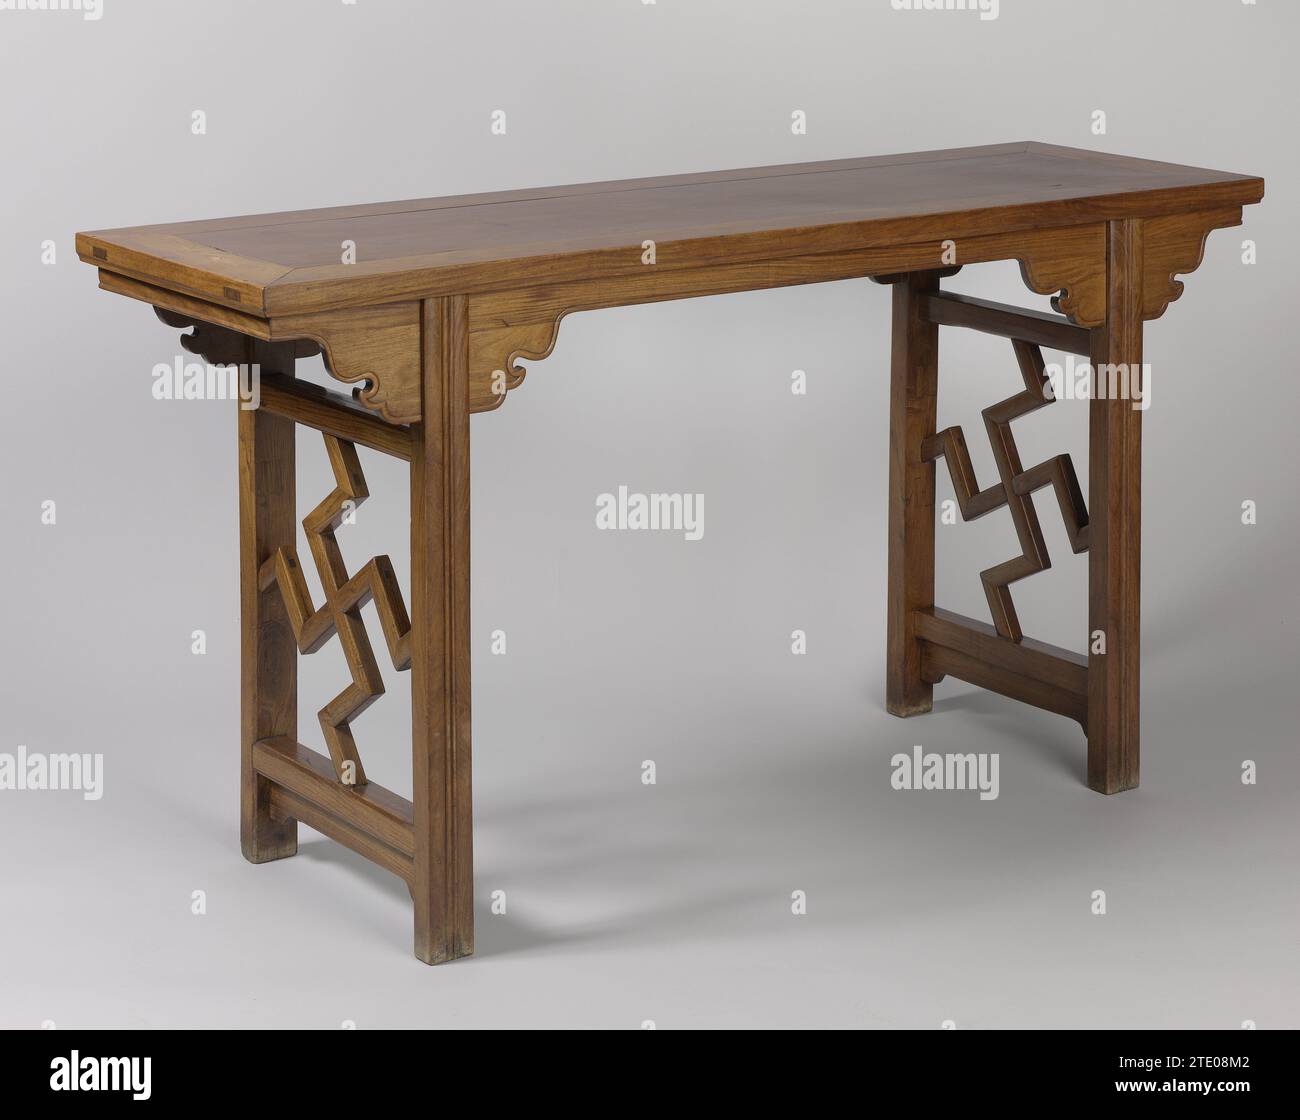 Tavolo, c. 1700 - c. 1799 tavolo di legno Huang-huali, ping-t 'ou-an' un 'tipo. La parte superiore del tavolo è formata da una singola parte in ottone e da una scanalatura contenuta in un telaio rettangolare allungato, il cui bordo viene scansionato verso il basso. Il caricatore poggia su una parte anteriore circolare ed è dotato di pezzi chiave stilizzati su entrambi i lati a forma di wok (Yuntoe) in corrispondenza del collegamento alle gambe. Fronton e Yuntou sono dotati di un bordo rialzato all'esterno. Il tavolo è su quattro gambe appiattite dotate di cannelures nella parte anteriore. Il collegamento tra le gambe all'estremità è formato da due Foto Stock